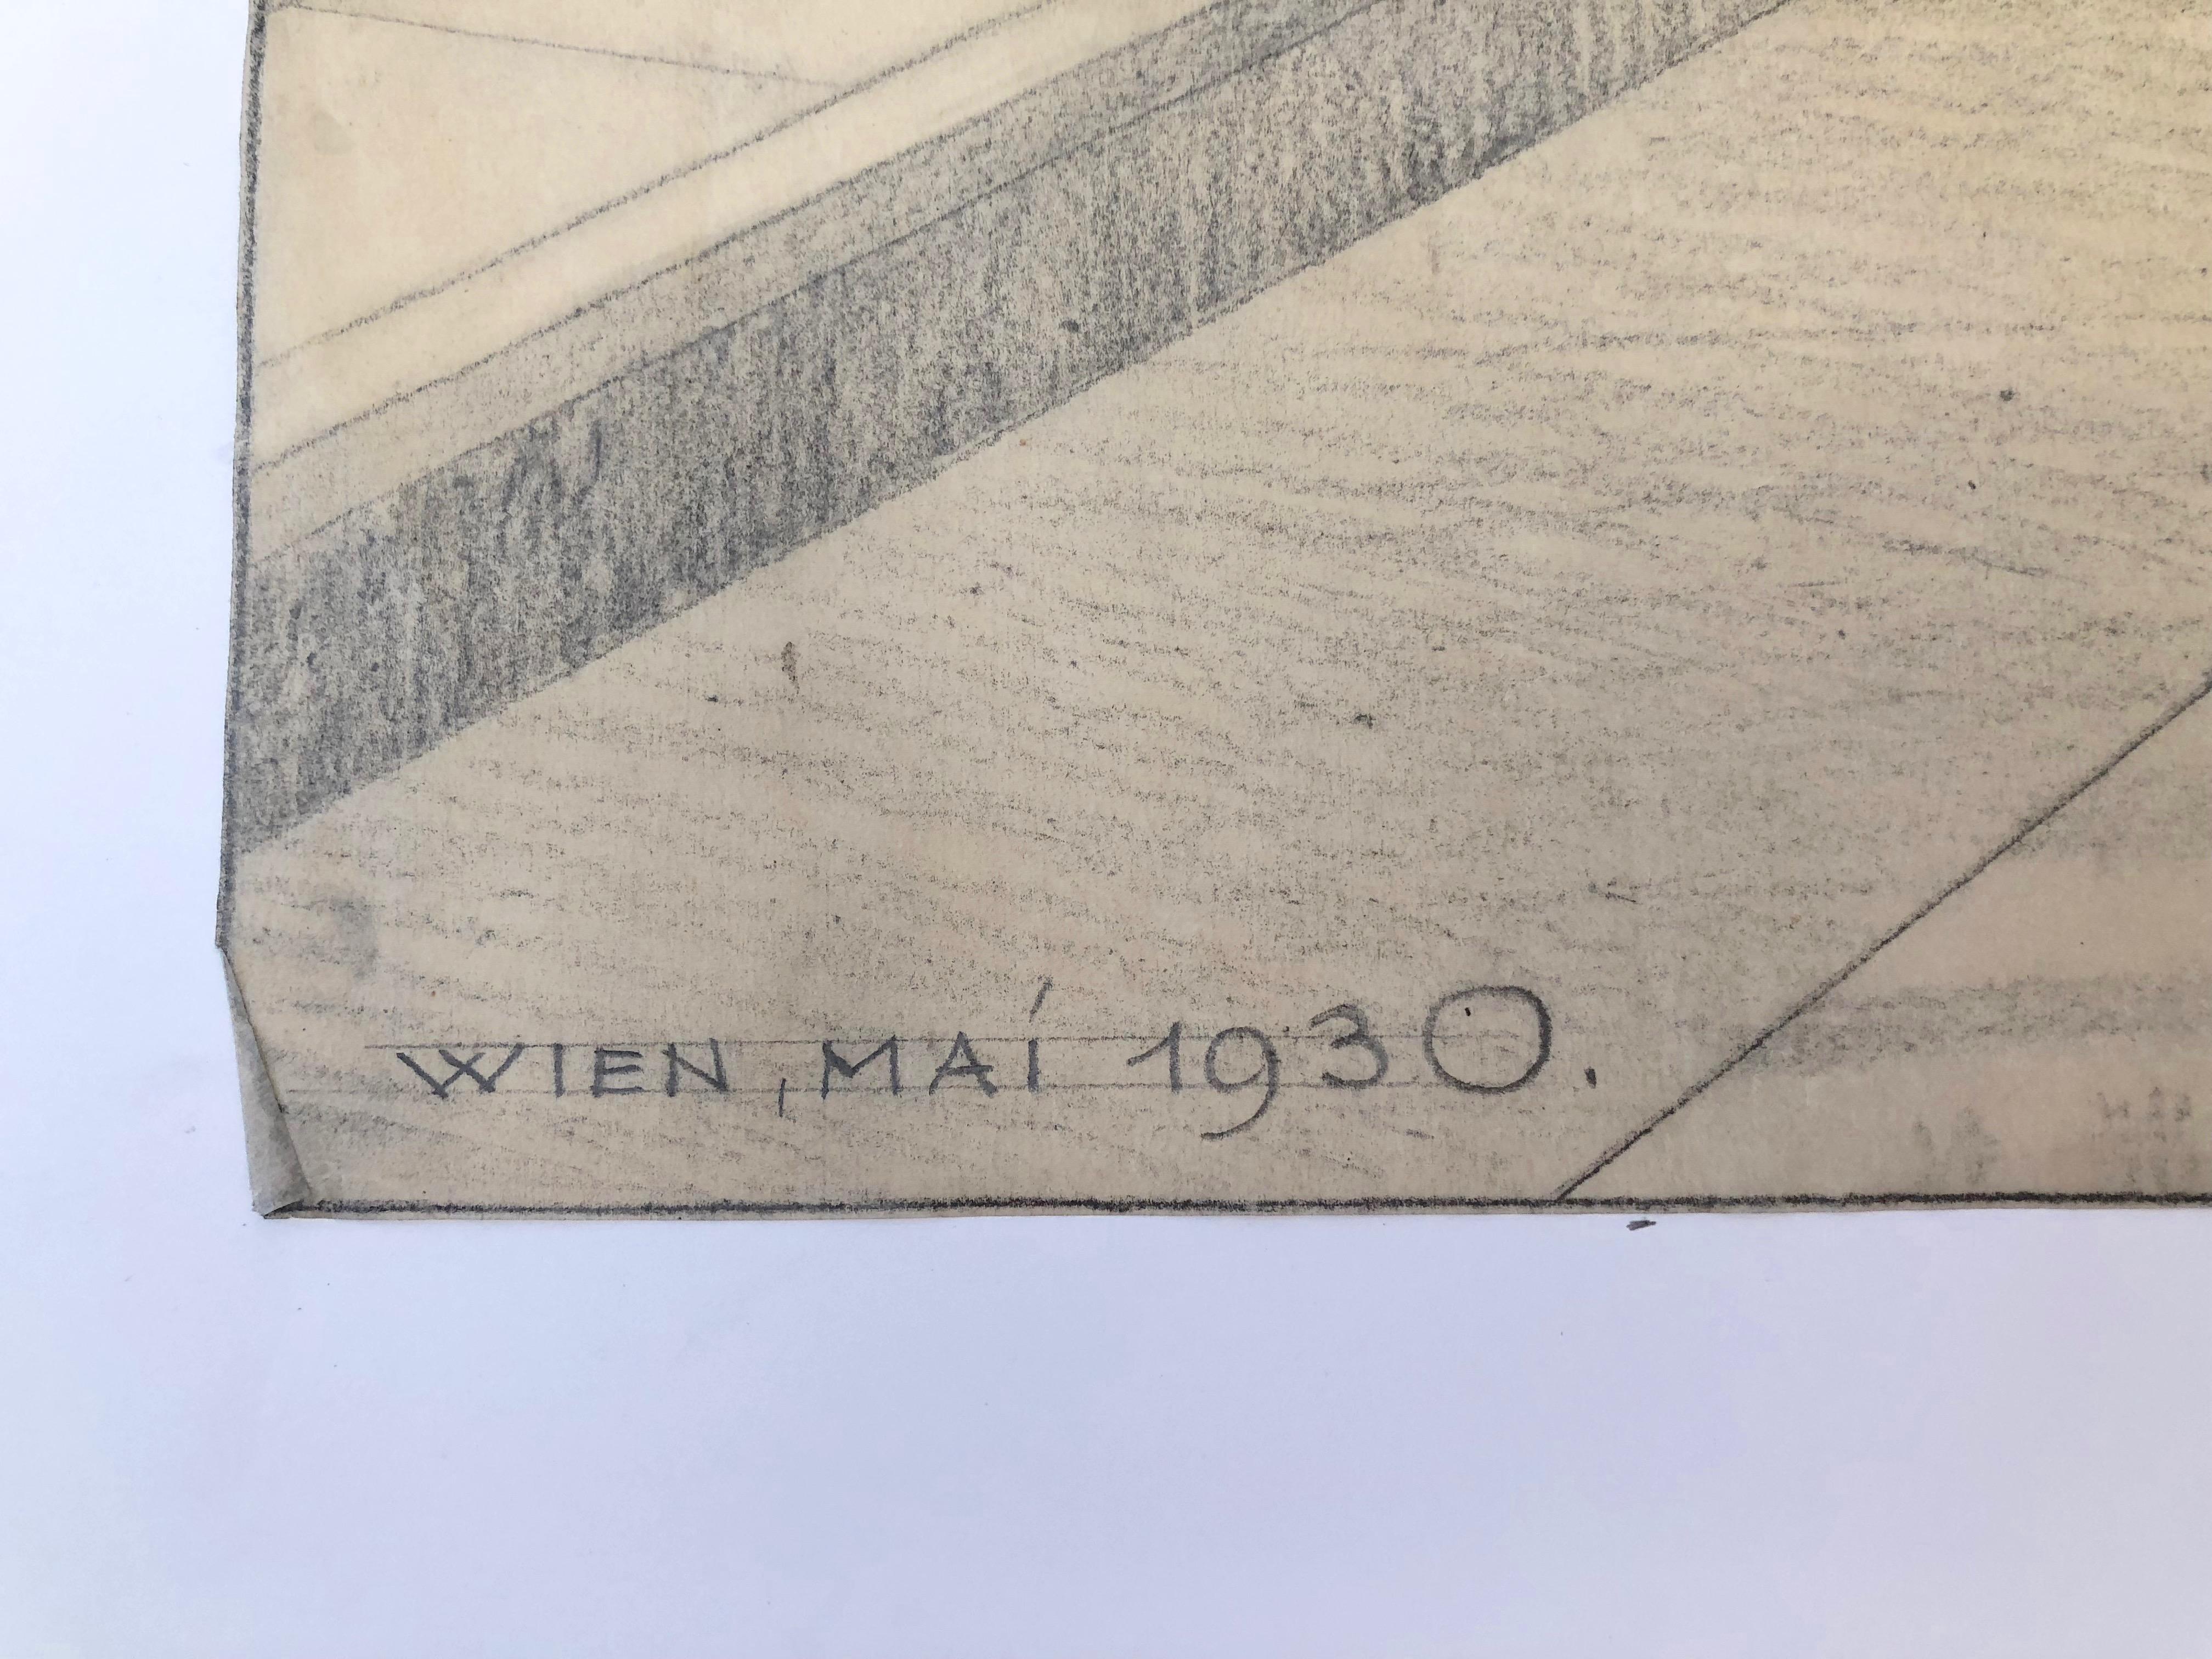 Dies ist ein seltener Satz von 5 Zeichnungen über die Freimaurerloge in der Schwind Gasse Nummer 8, im 4. 
Die Zeichnungen wurden 1930 im Monat Mai von dem Architekten Robert Gerlach angefertigt. Die Lodge wurde am 12. September 1930 eröffnet.
Mit